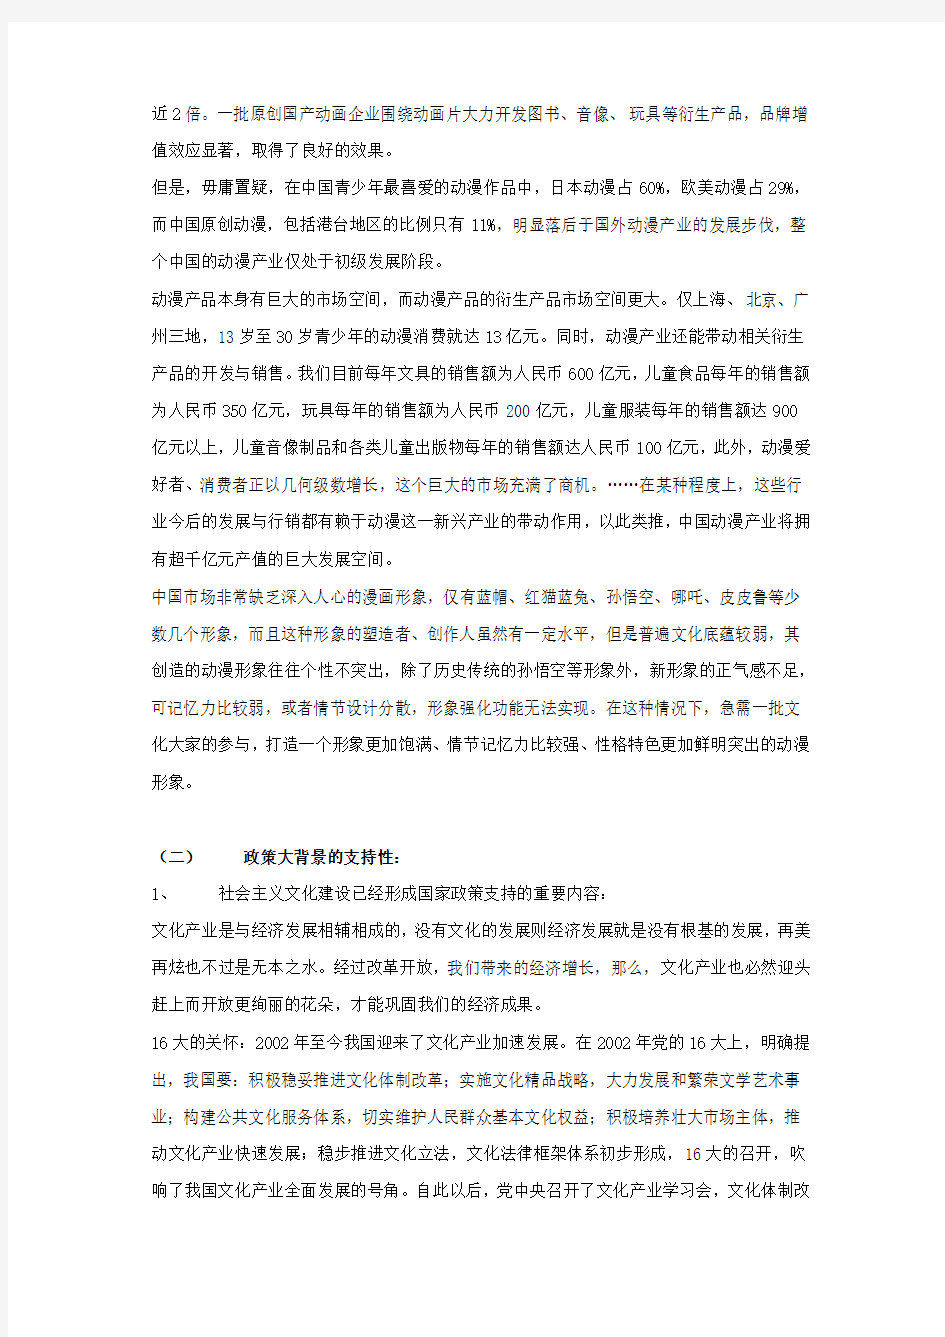 中国动漫产业发展的社会背景研究(河南省)